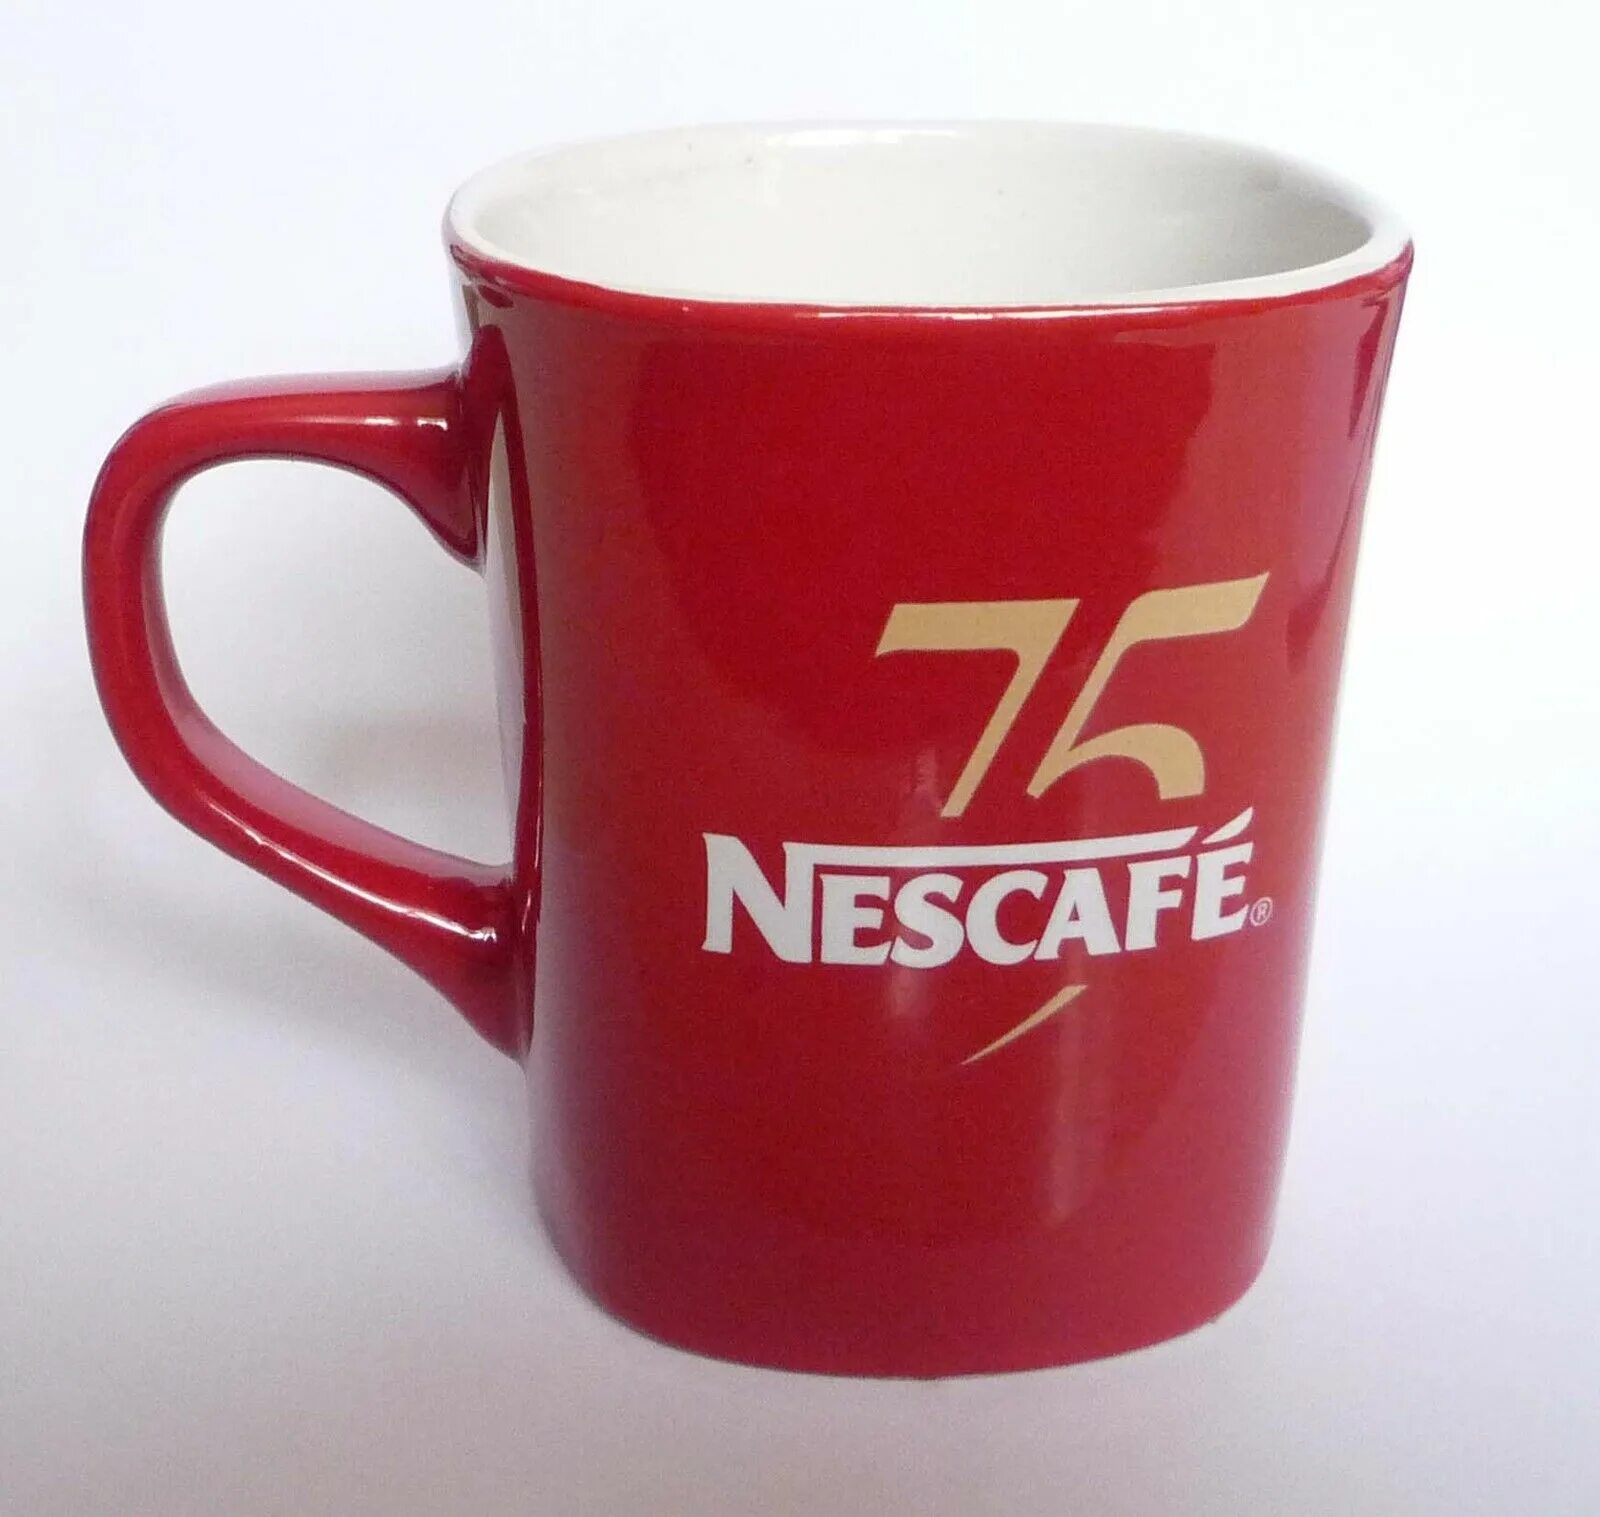 Кружки nescafe. Кружка Нескафе красная. Nescafe чашка красная. Кофе Нескафе красная Кружка. Оригинальная красная Кружка Нескафе.